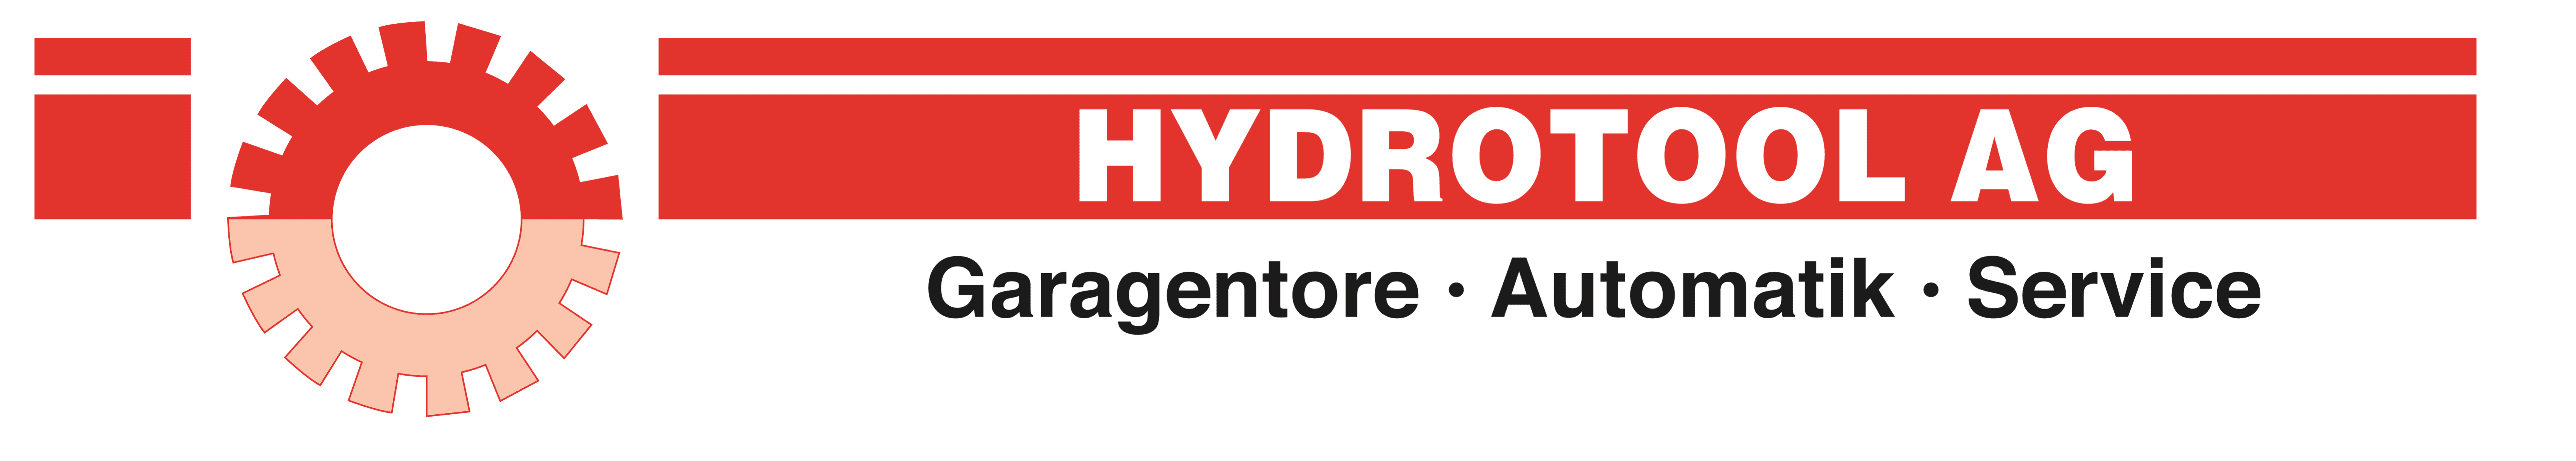 Hydrotool AG